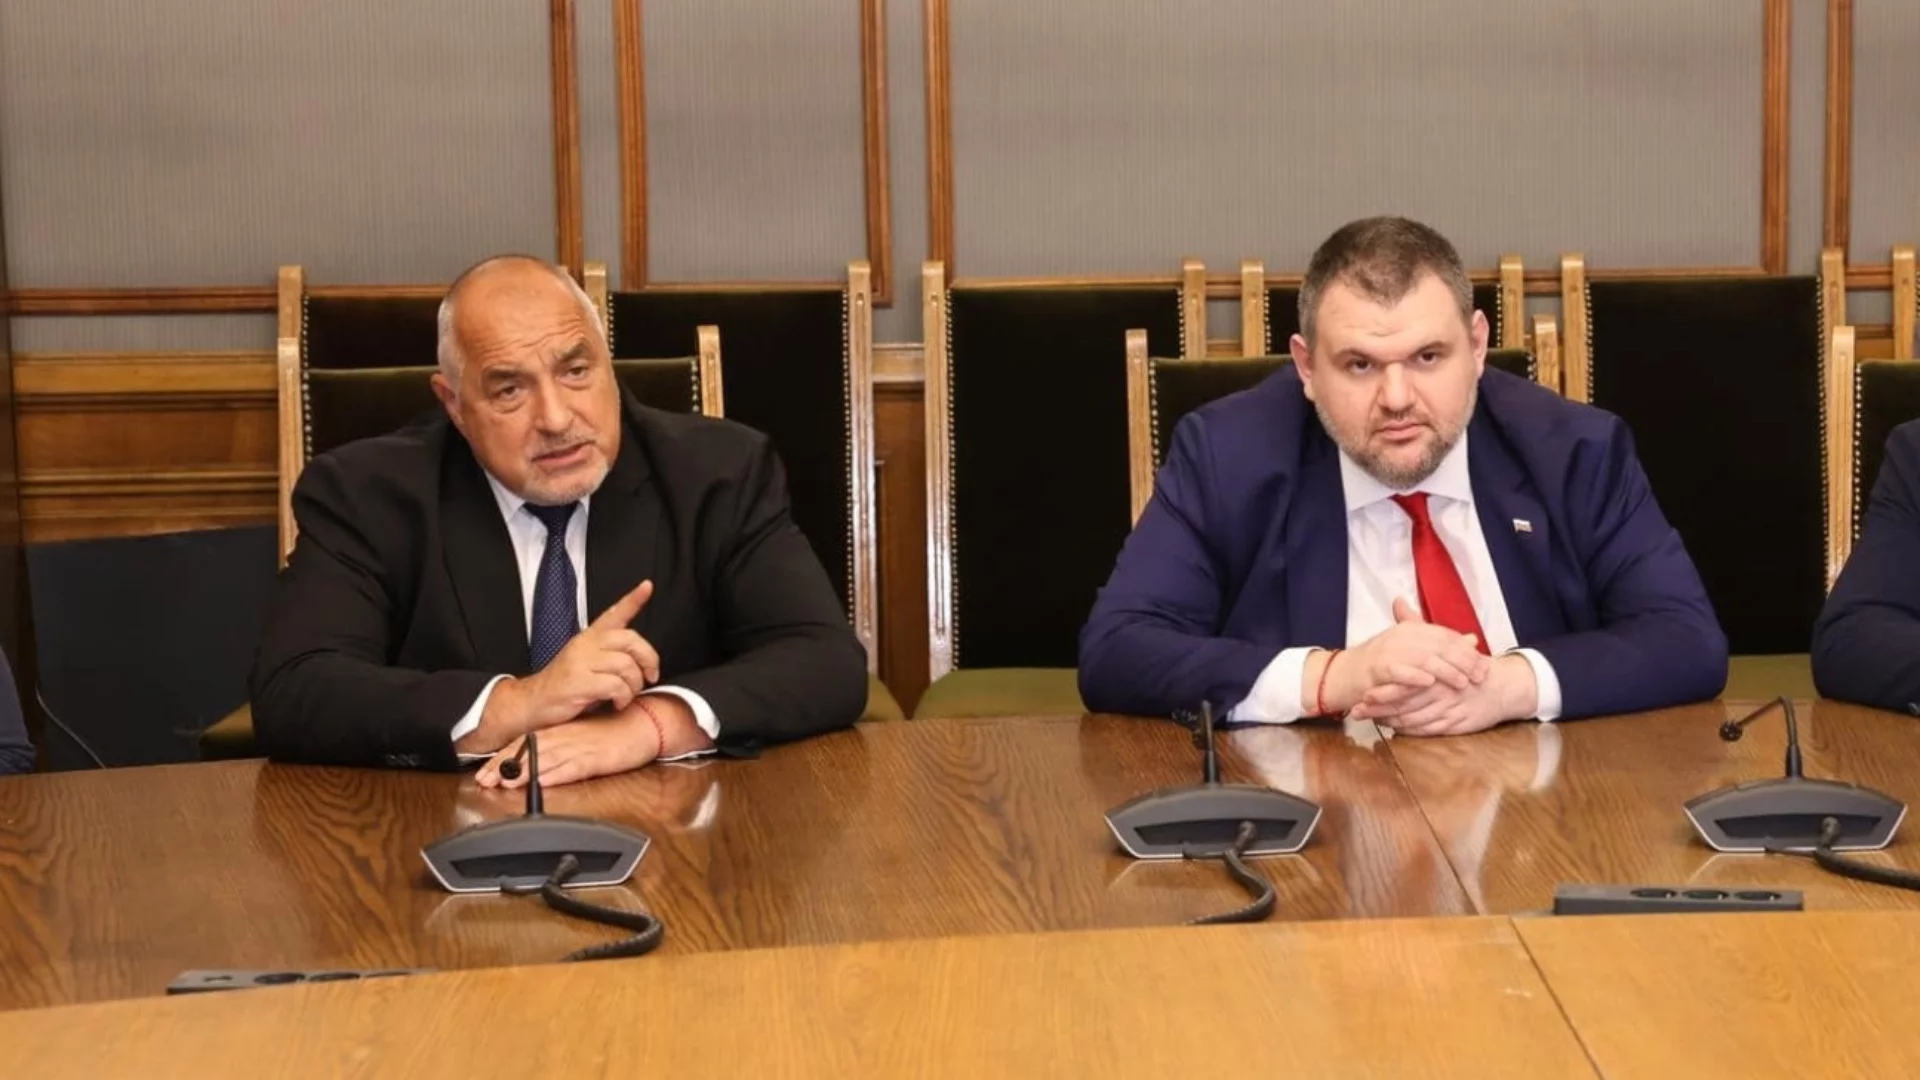 Политическа каша: ДПС е готово да управлява с Борисов, него го е страх